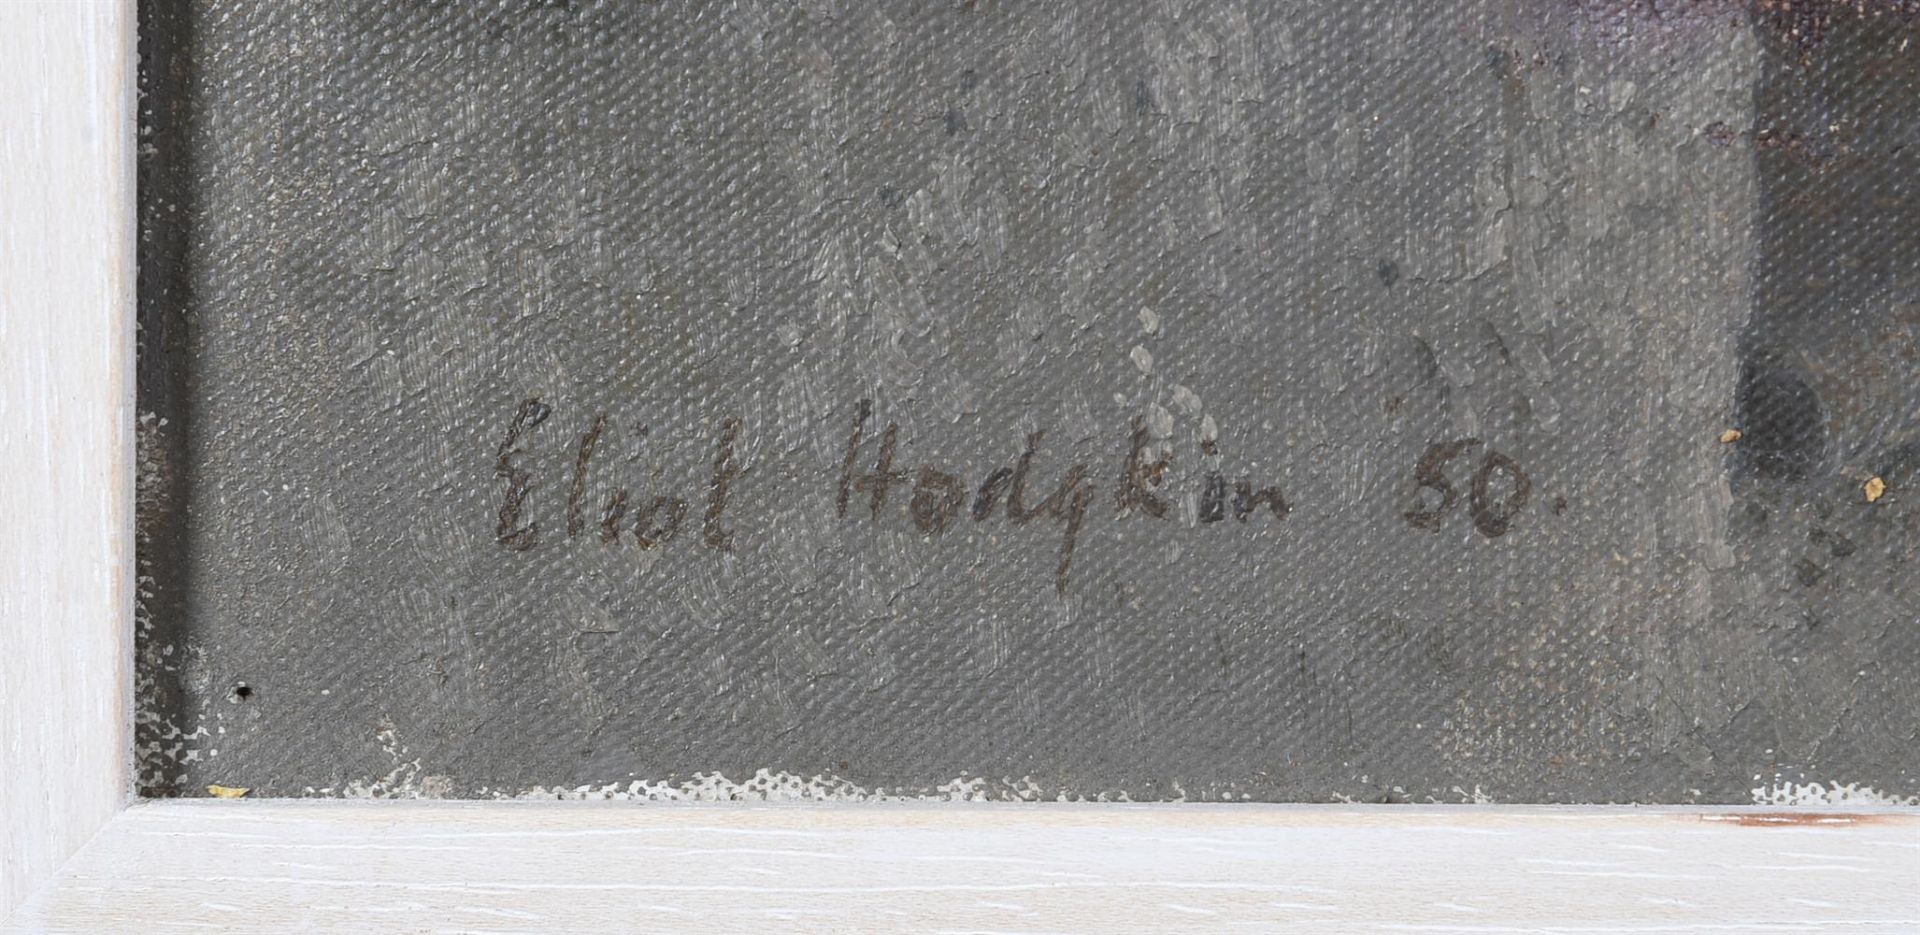 λ ELIOT HODGKIN (BRITISH 1905-1987), IN THE TICINO, SWITZERLAND - Bild 3 aus 4